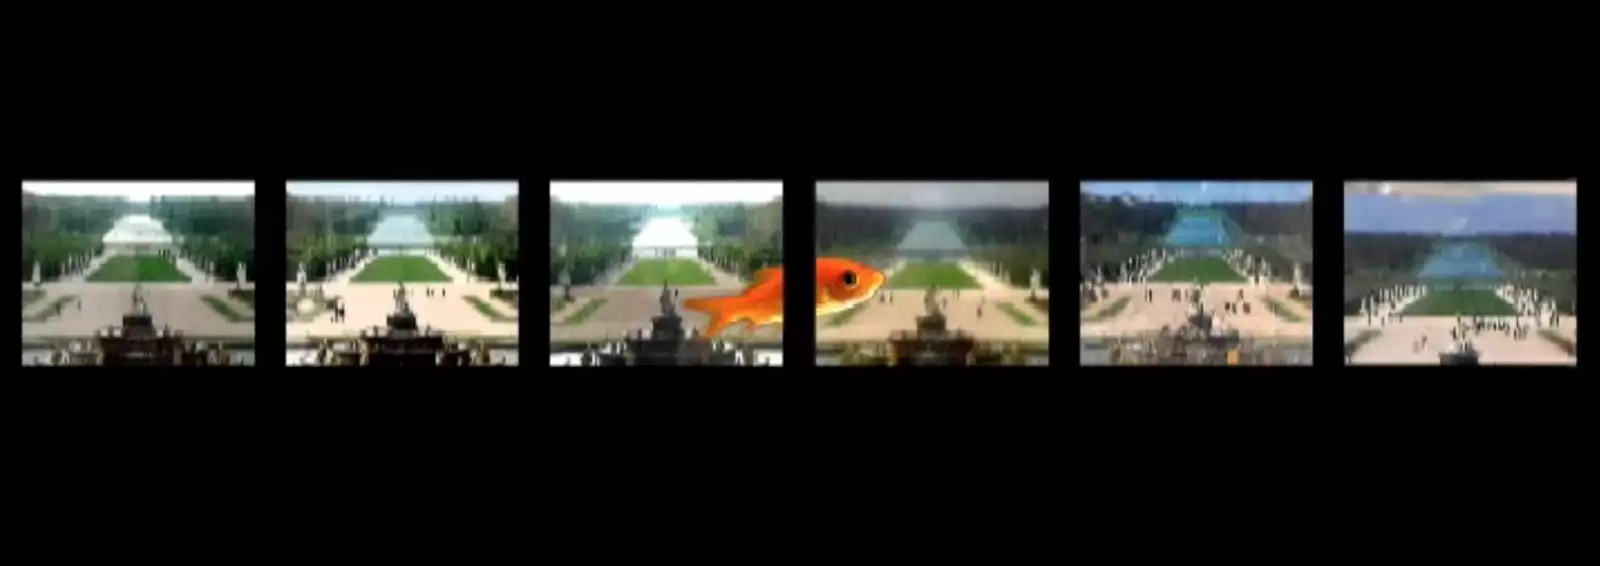 《凡爾賽花園》，錄像，ntsc，彩色，有聲，3分10秒，2005-2006年。